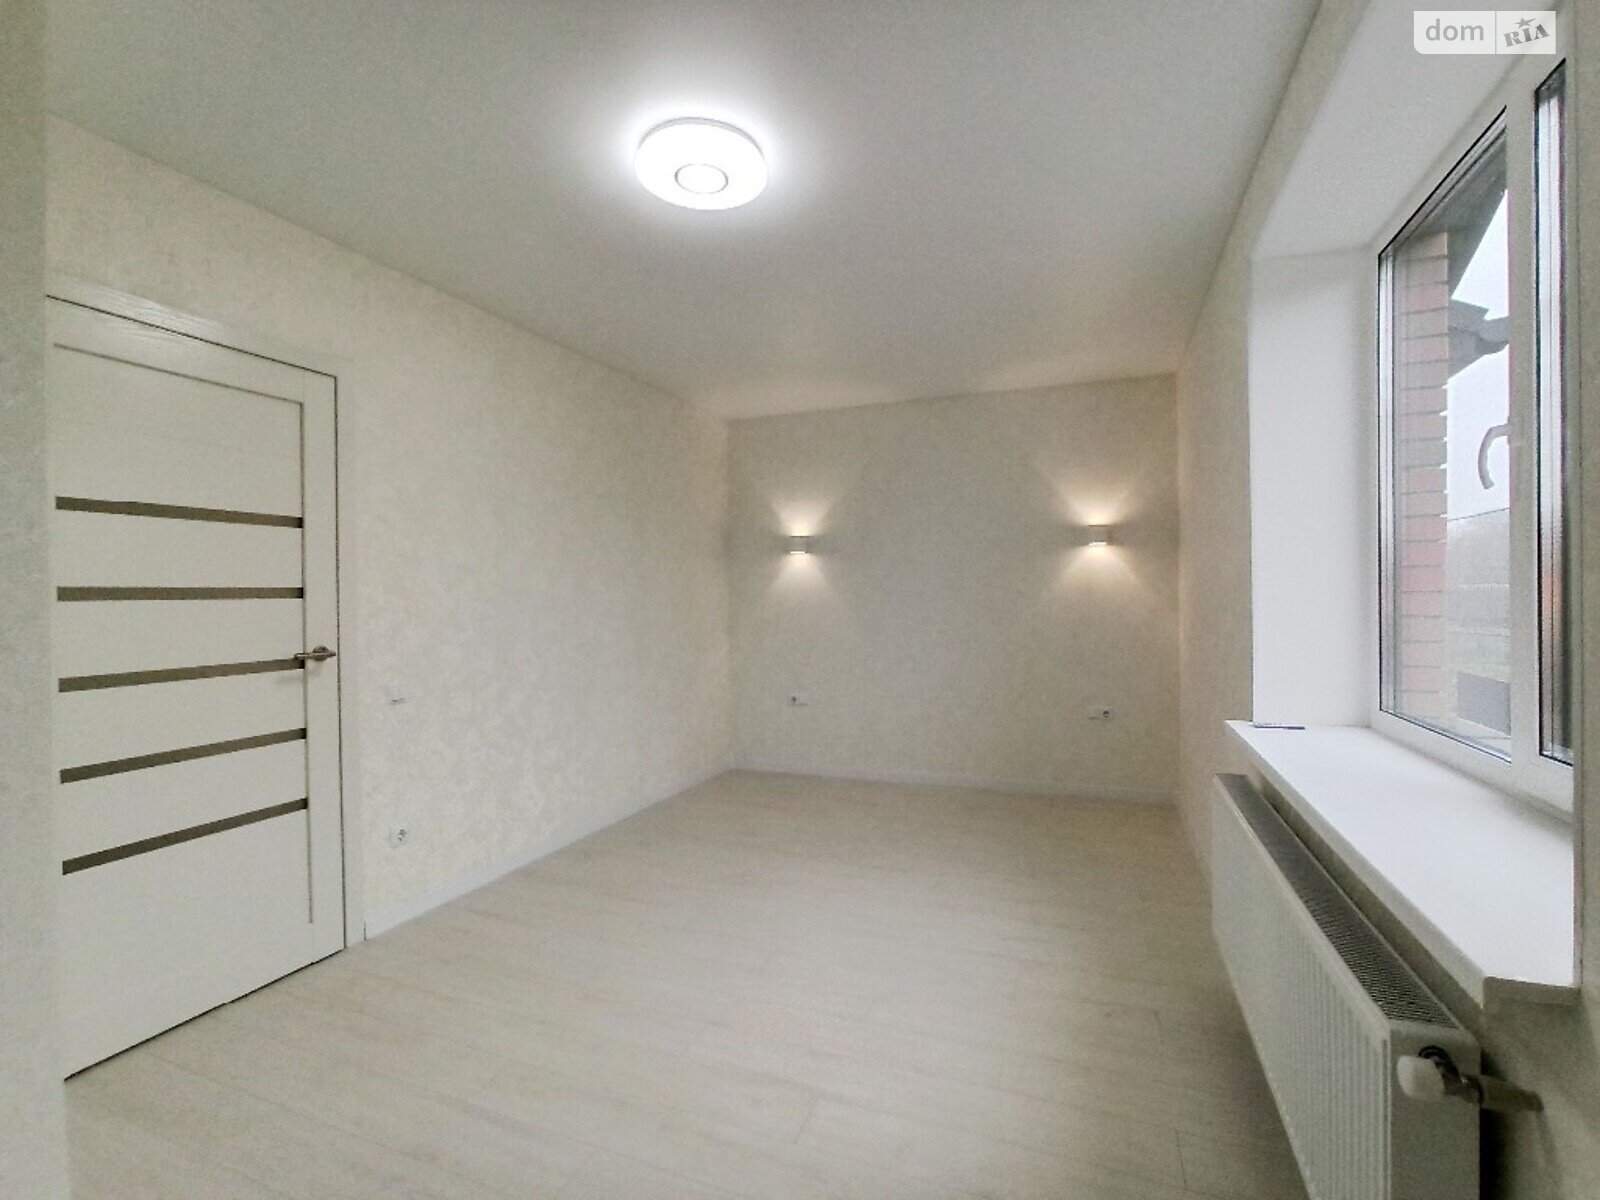 Продажа части дома в Якушинцах, улица Богдана Хмельницкого, 4 комнаты фото 1